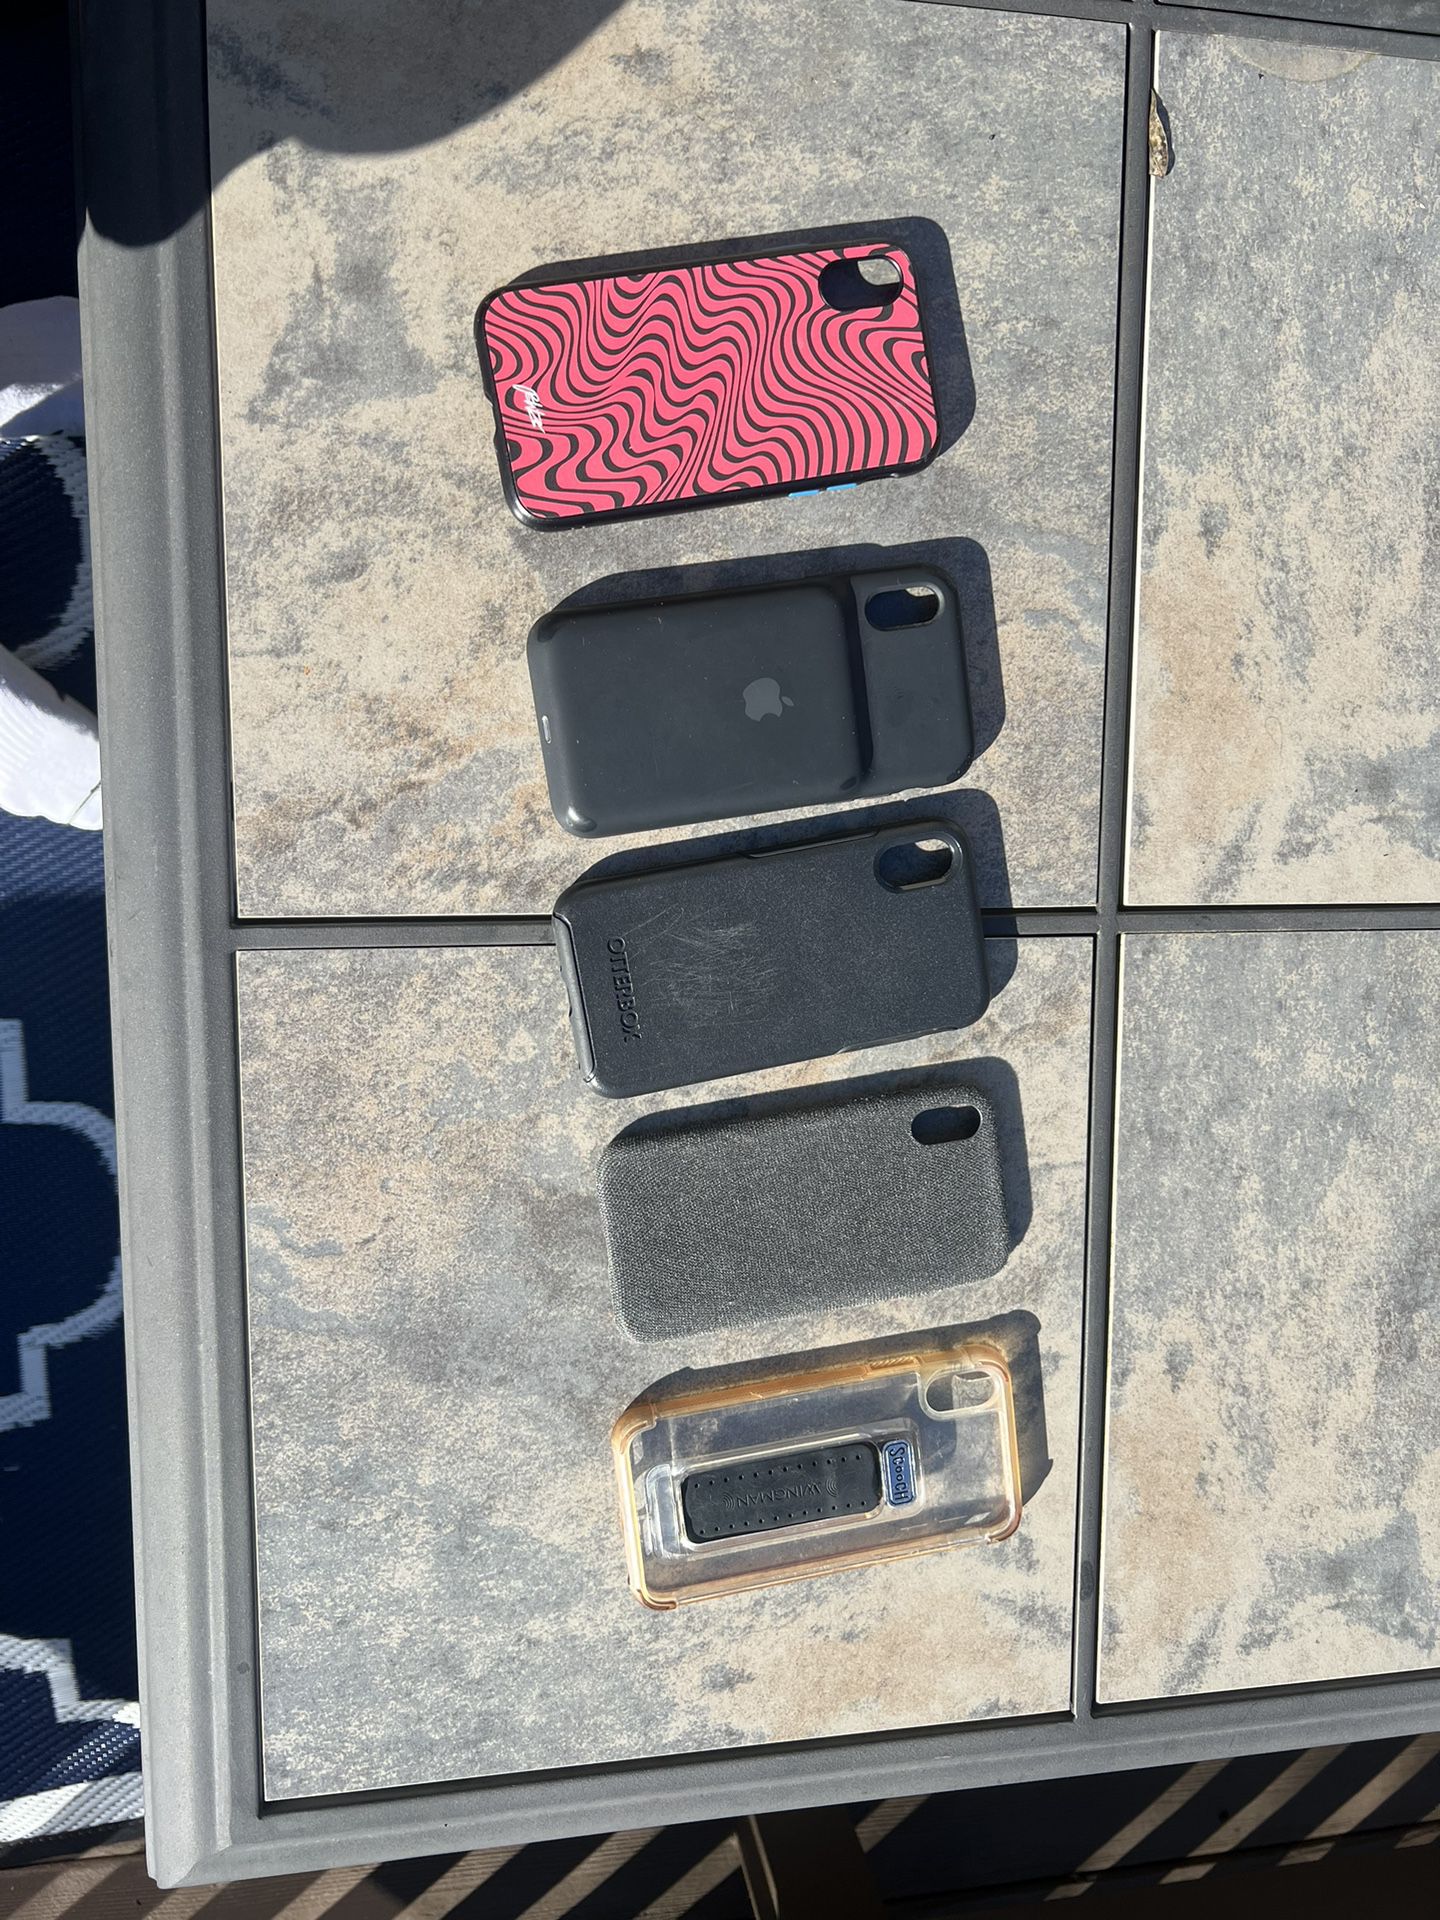 iPhone X/XS iPhone Cases For Sale. Original Pewdiepie Case 